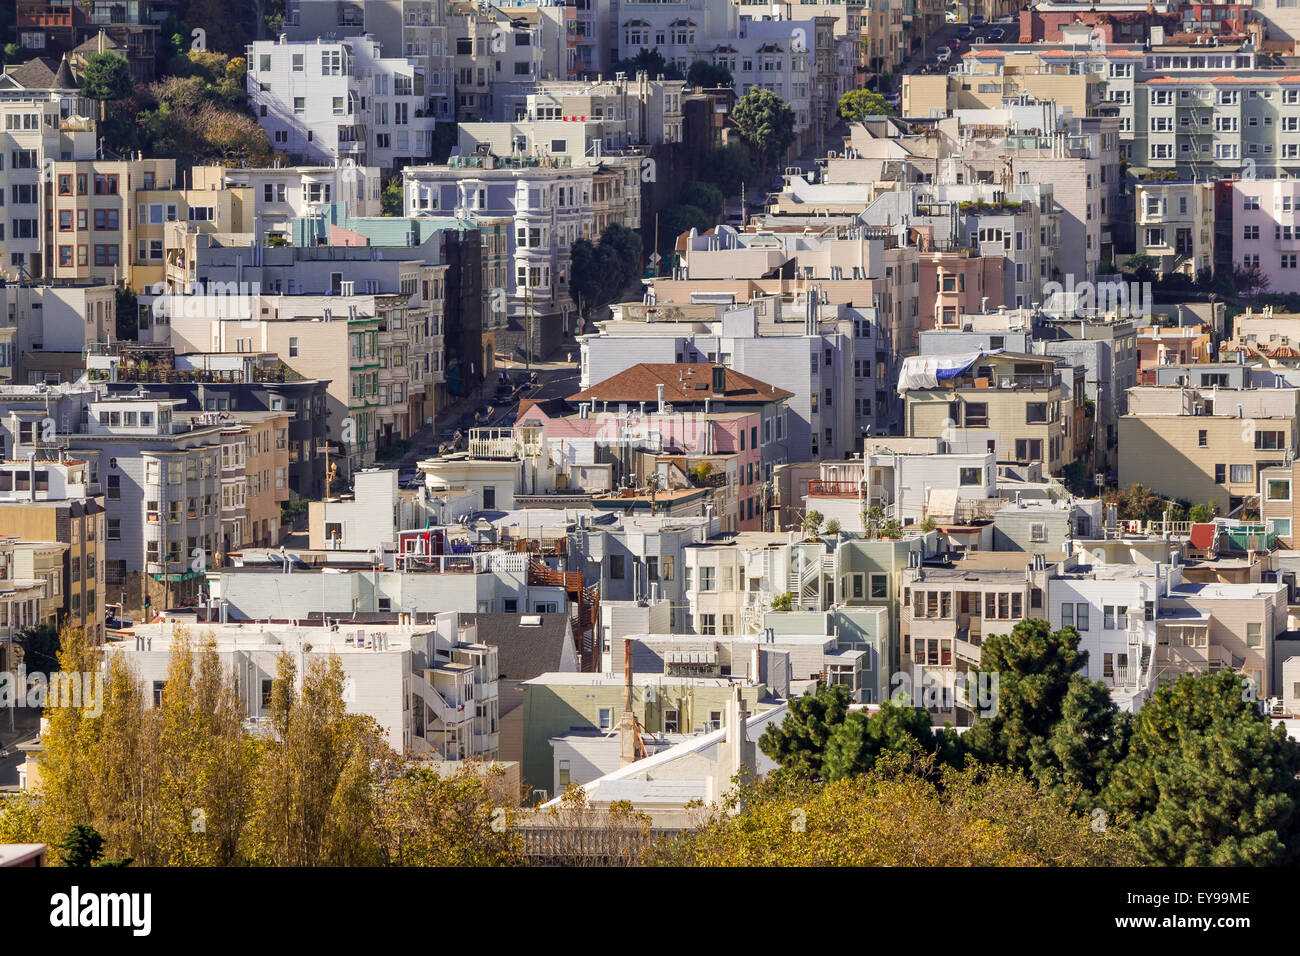 Case e appartamenti densamente imballati su una collina ripida nella zona di collina russa di San Francisco, California, Stati Uniti Foto Stock